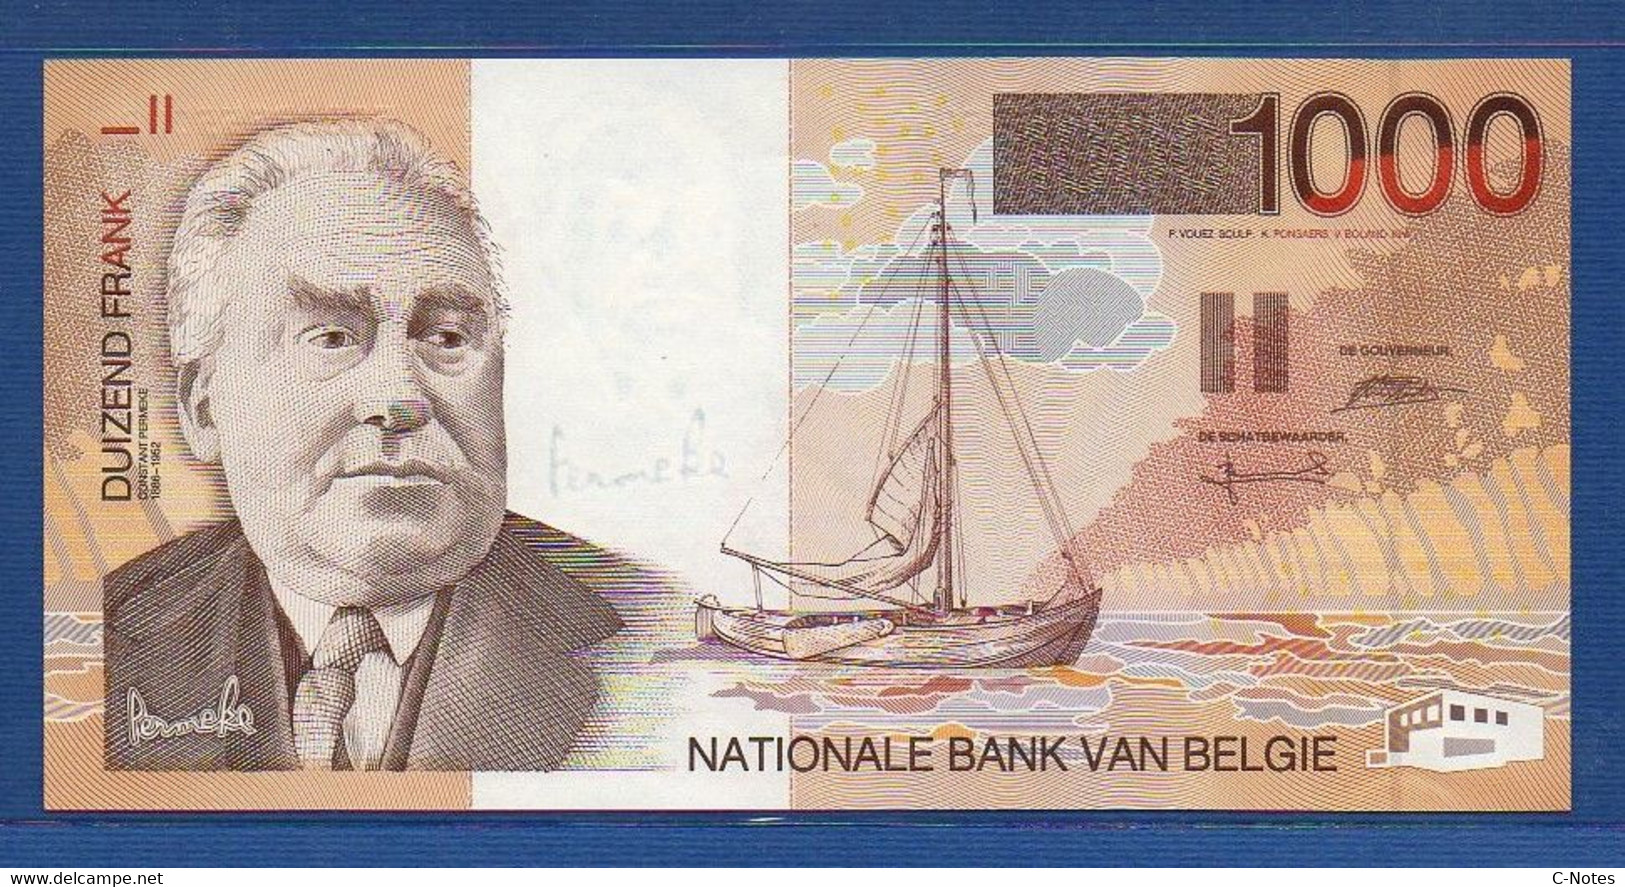 BELGIUM - P.150 - 1000 Francs ND (1997) UNC, Serie 50802655068 - 1000 Franchi